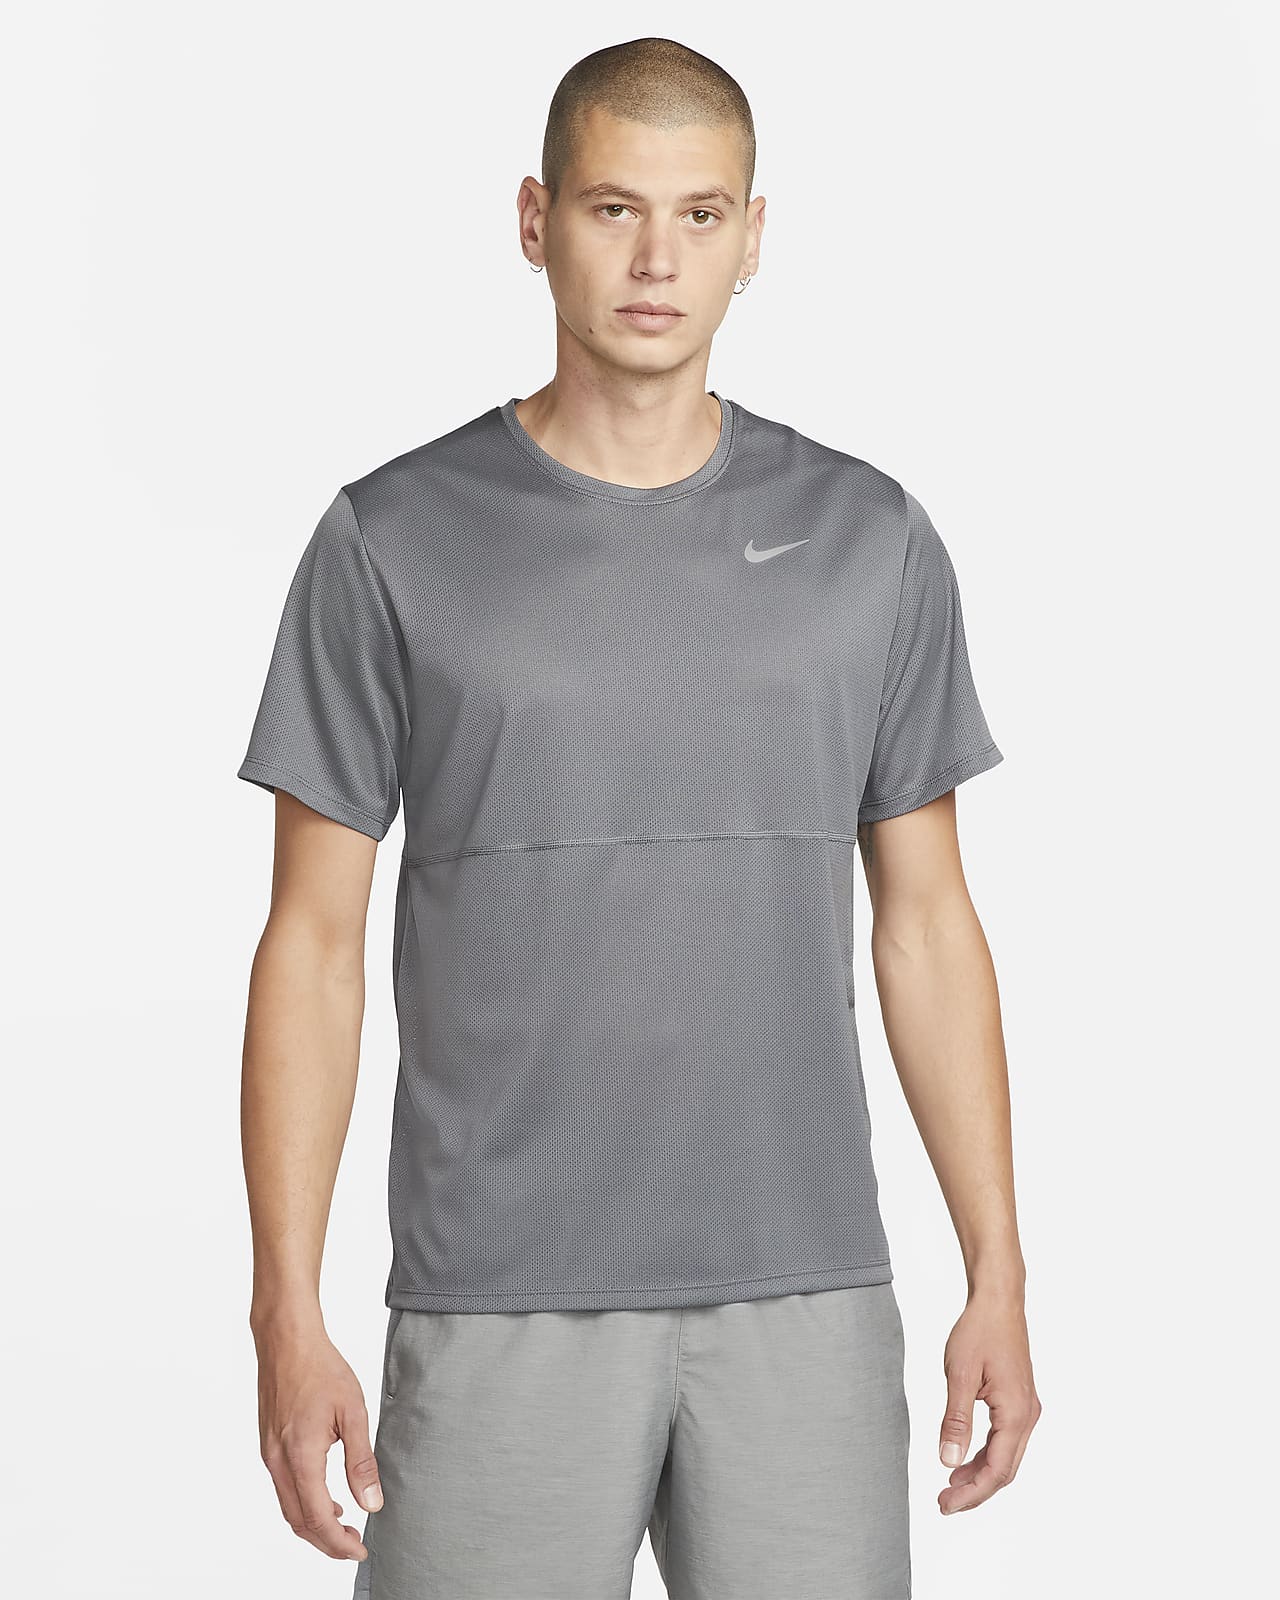 Peave Superficial Visión general Nike Breathe Camiseta de running - Hombre. Nike ES